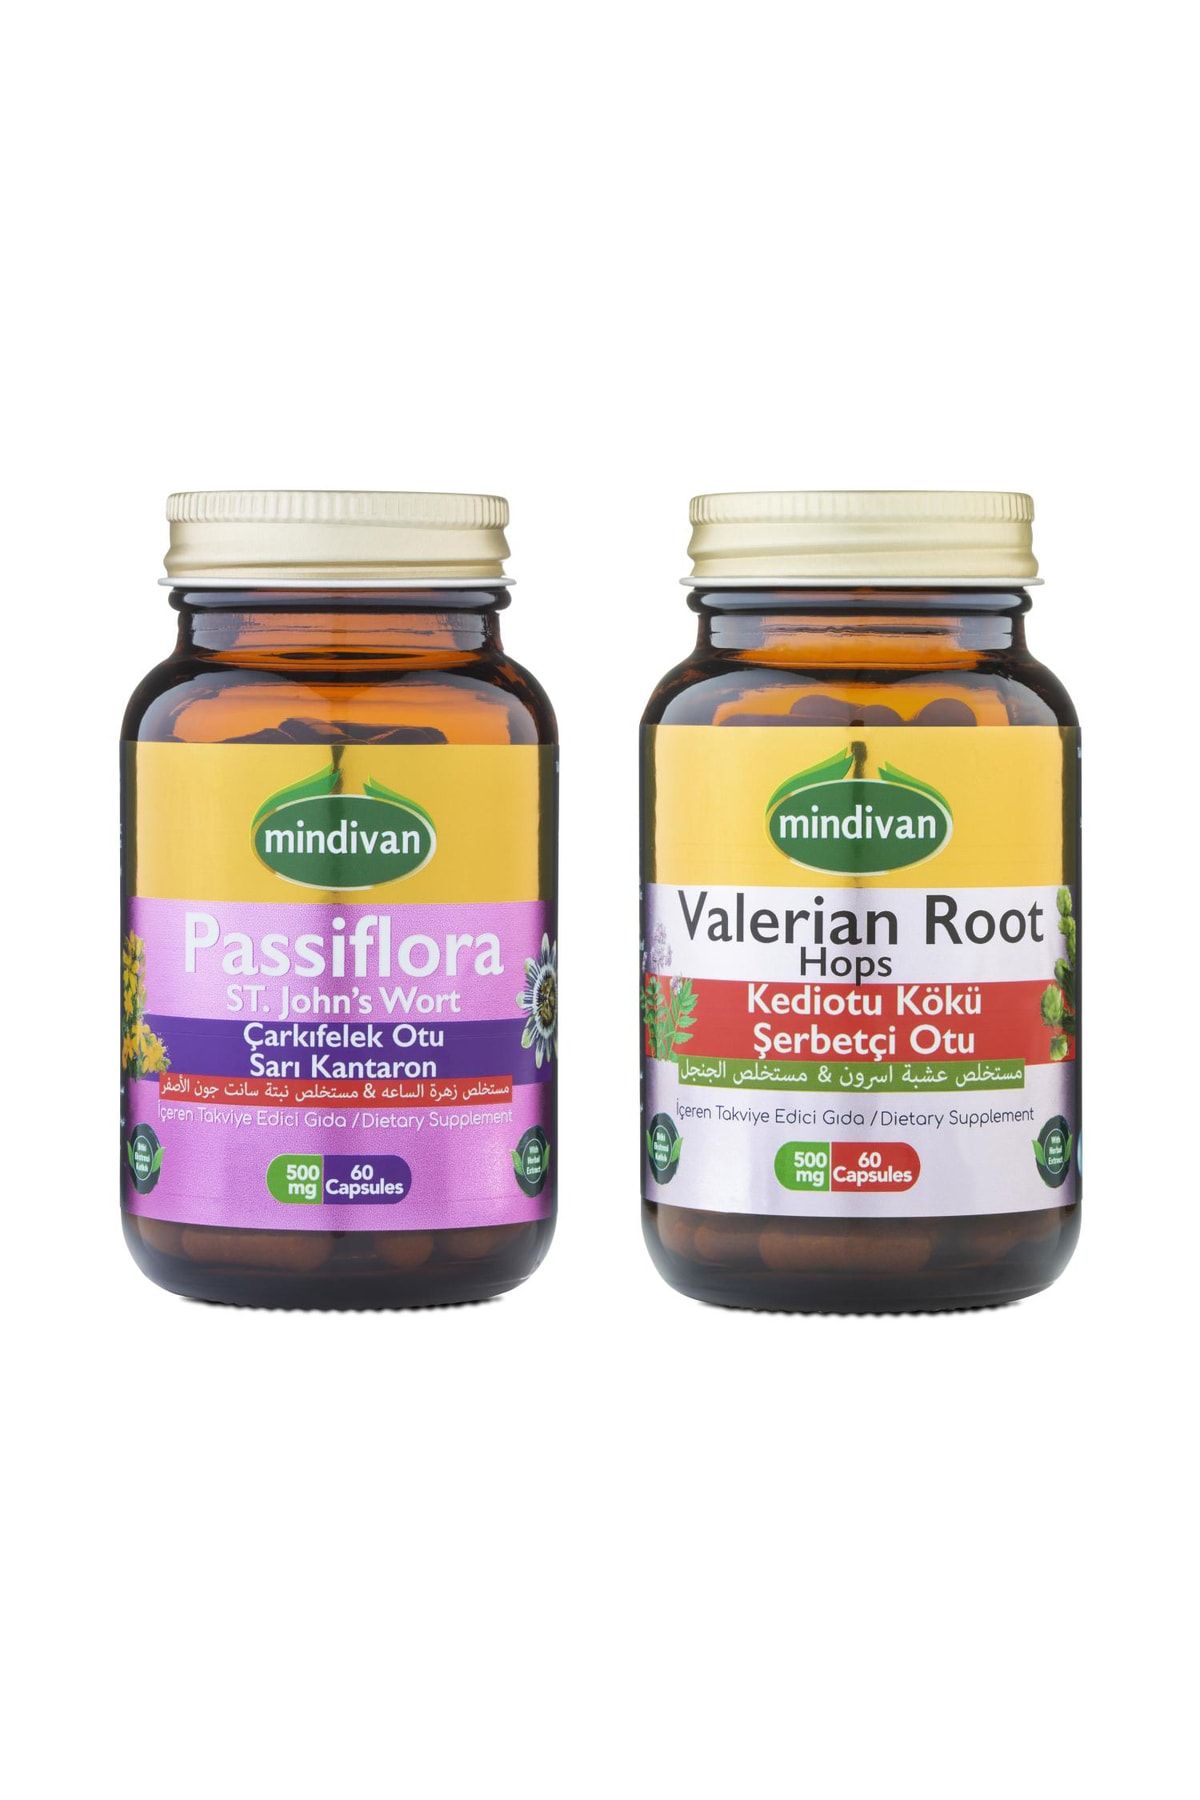 Passiflora Çarkıfelek Otu Kapsül + Valerian Root Kediotu Kapsül, Ikili Uyku Seti_0